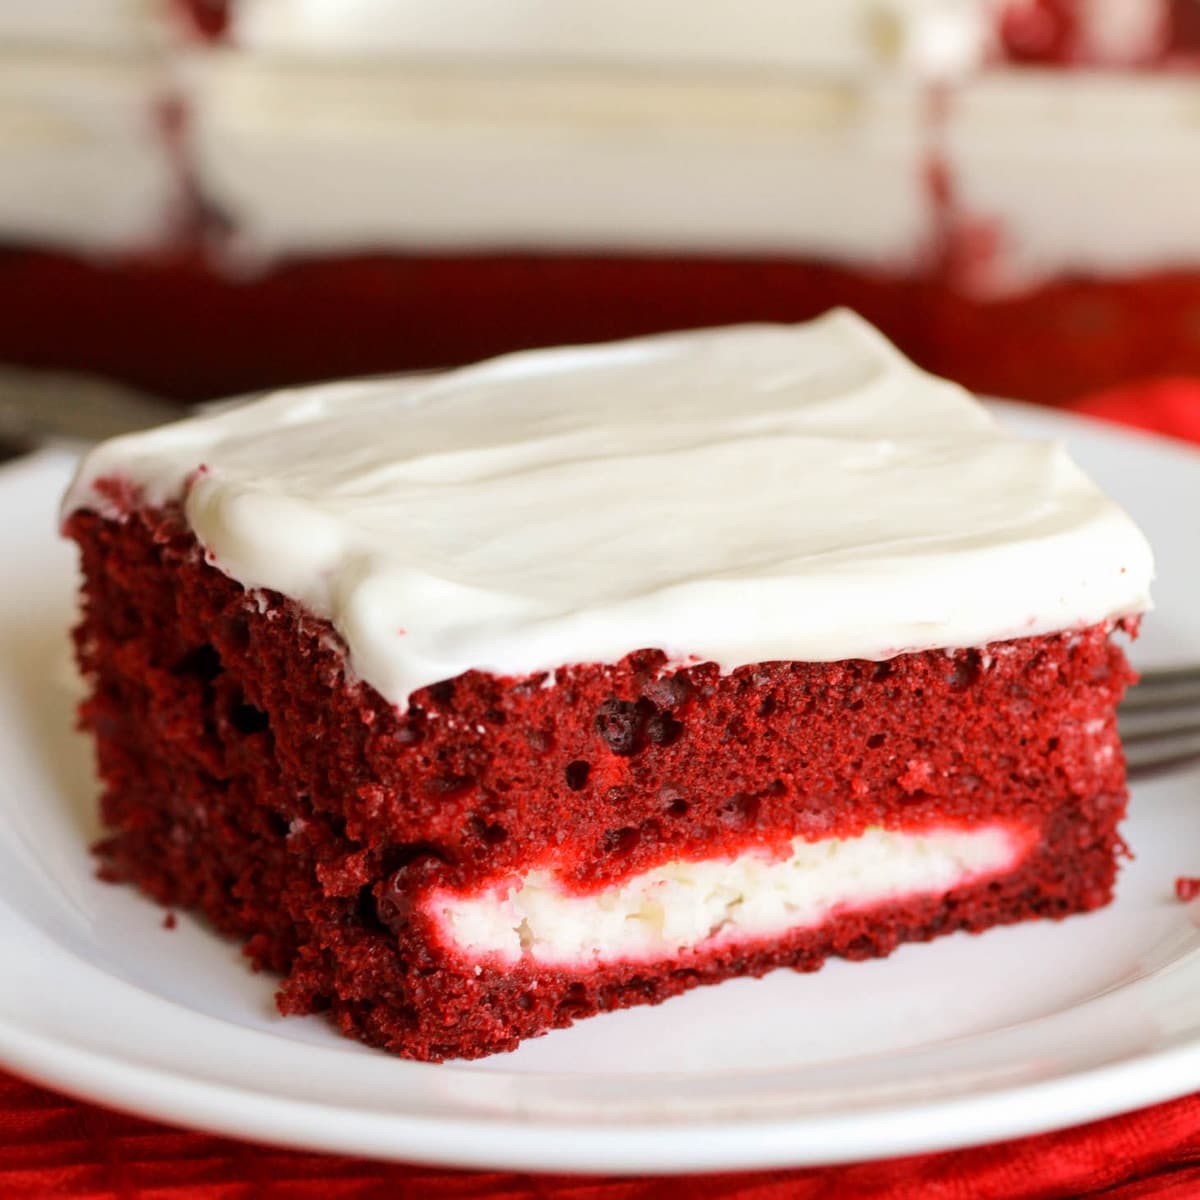 简单的蛋糕食谱-一片bob综合手机客户红丝绒芝士蛋糕在一个白色的盘子。